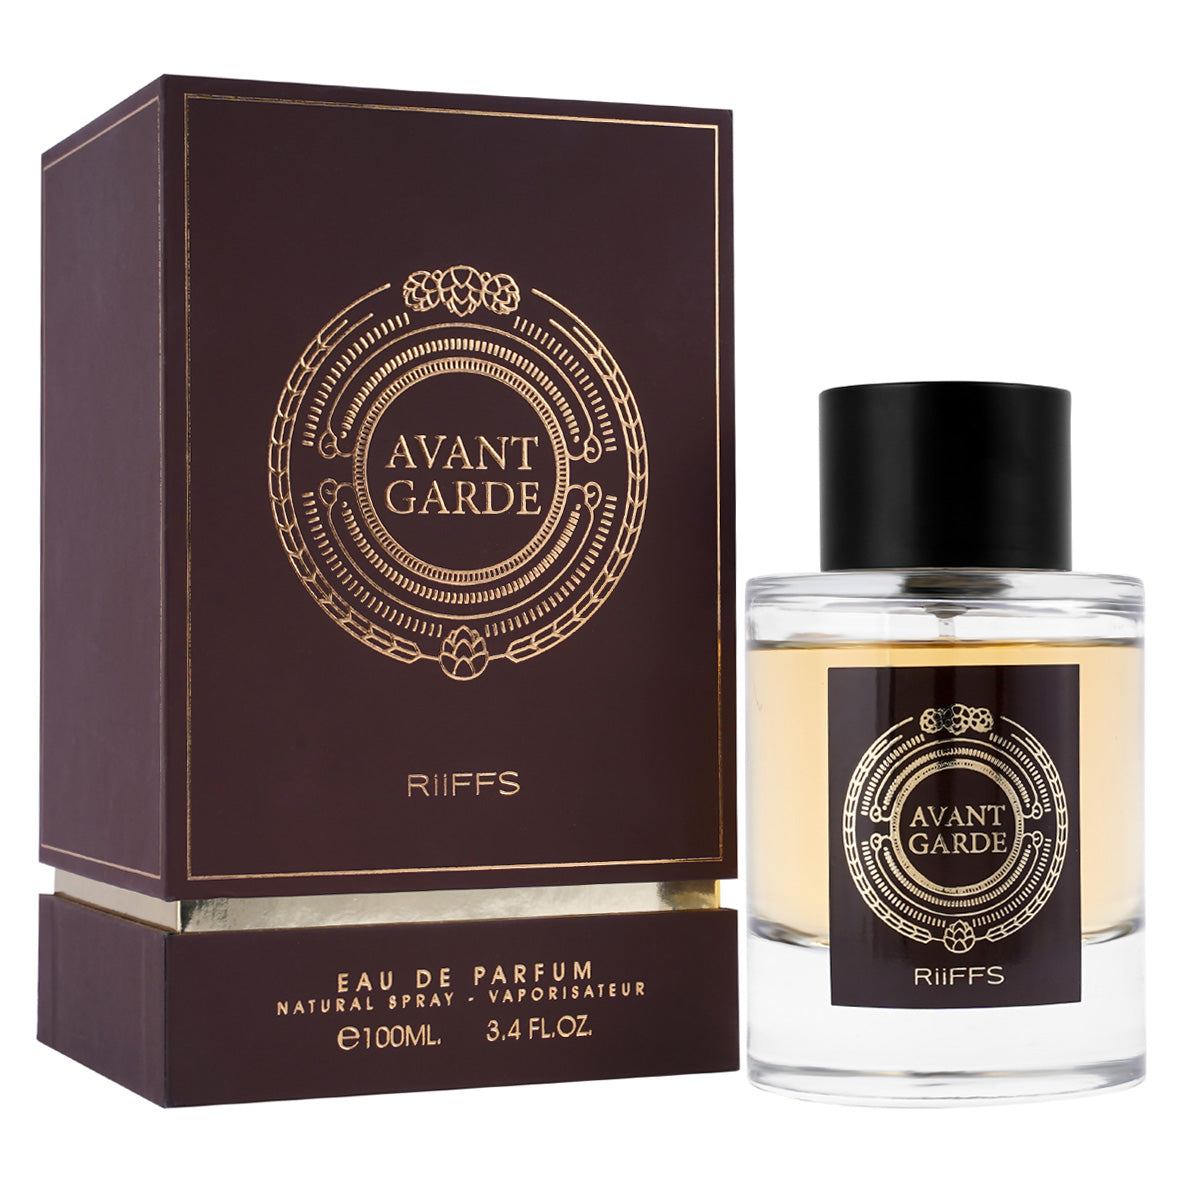 All Etiquetado Arabe Perfumes - Productos de Lujo